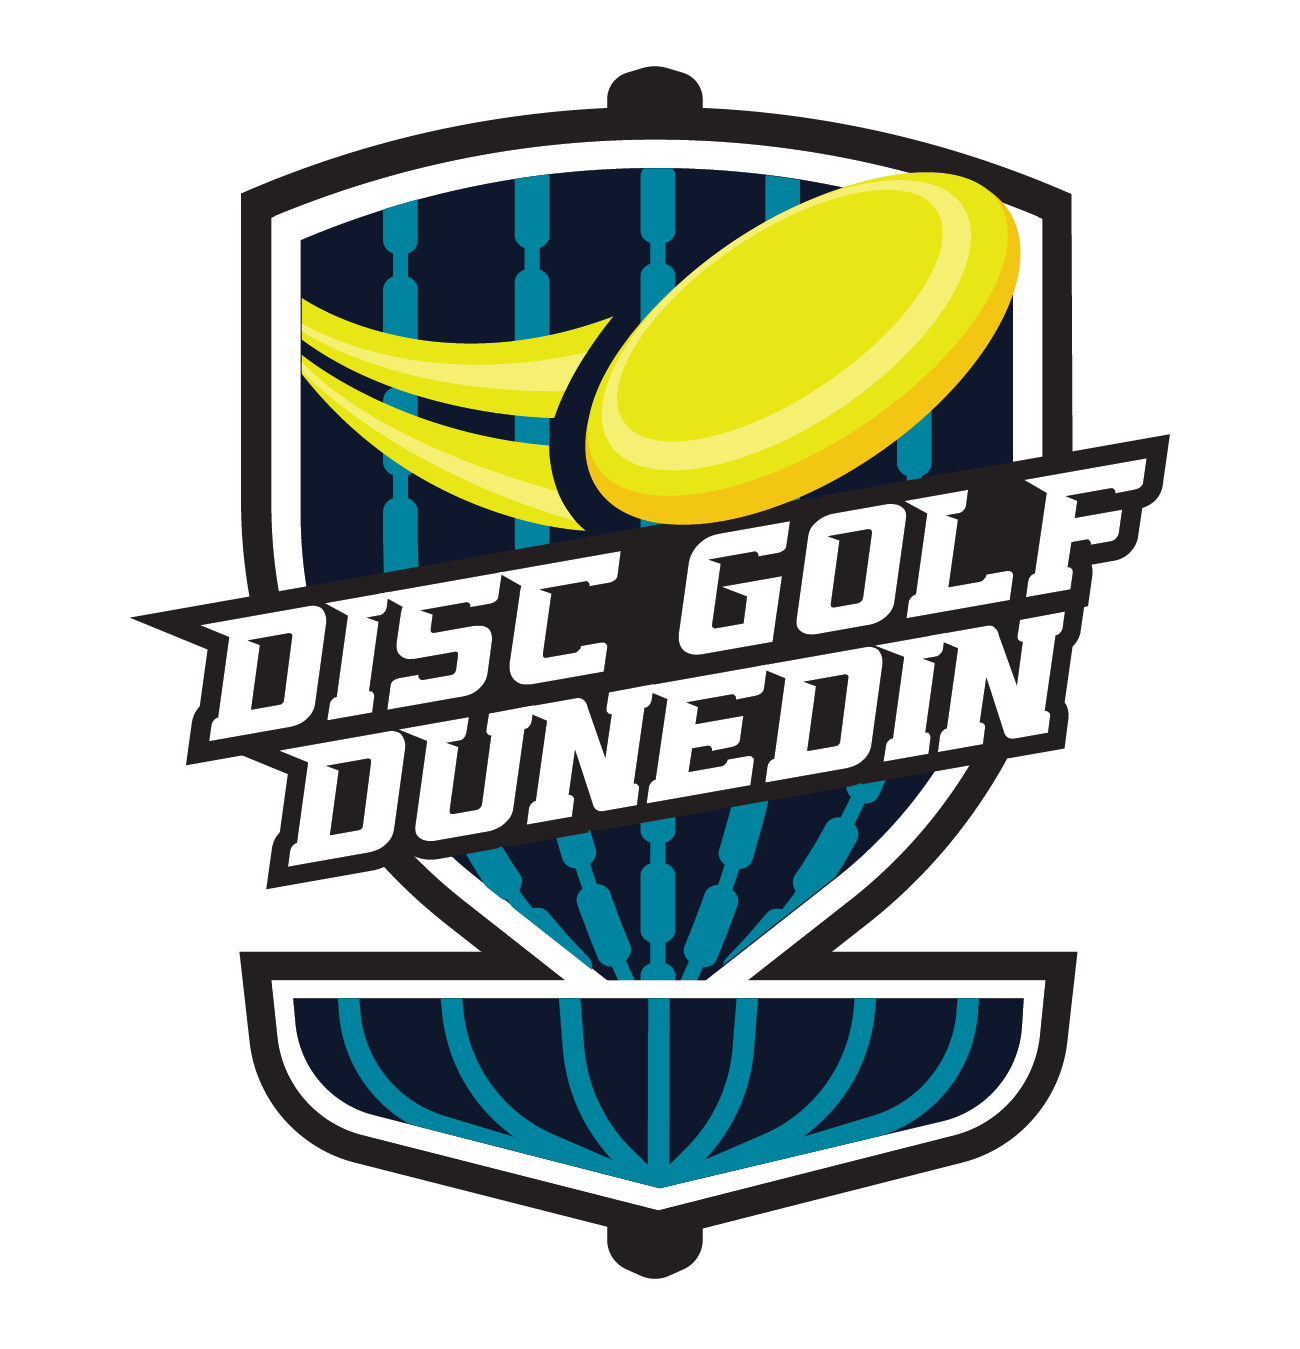 Disc Golf Dunedin